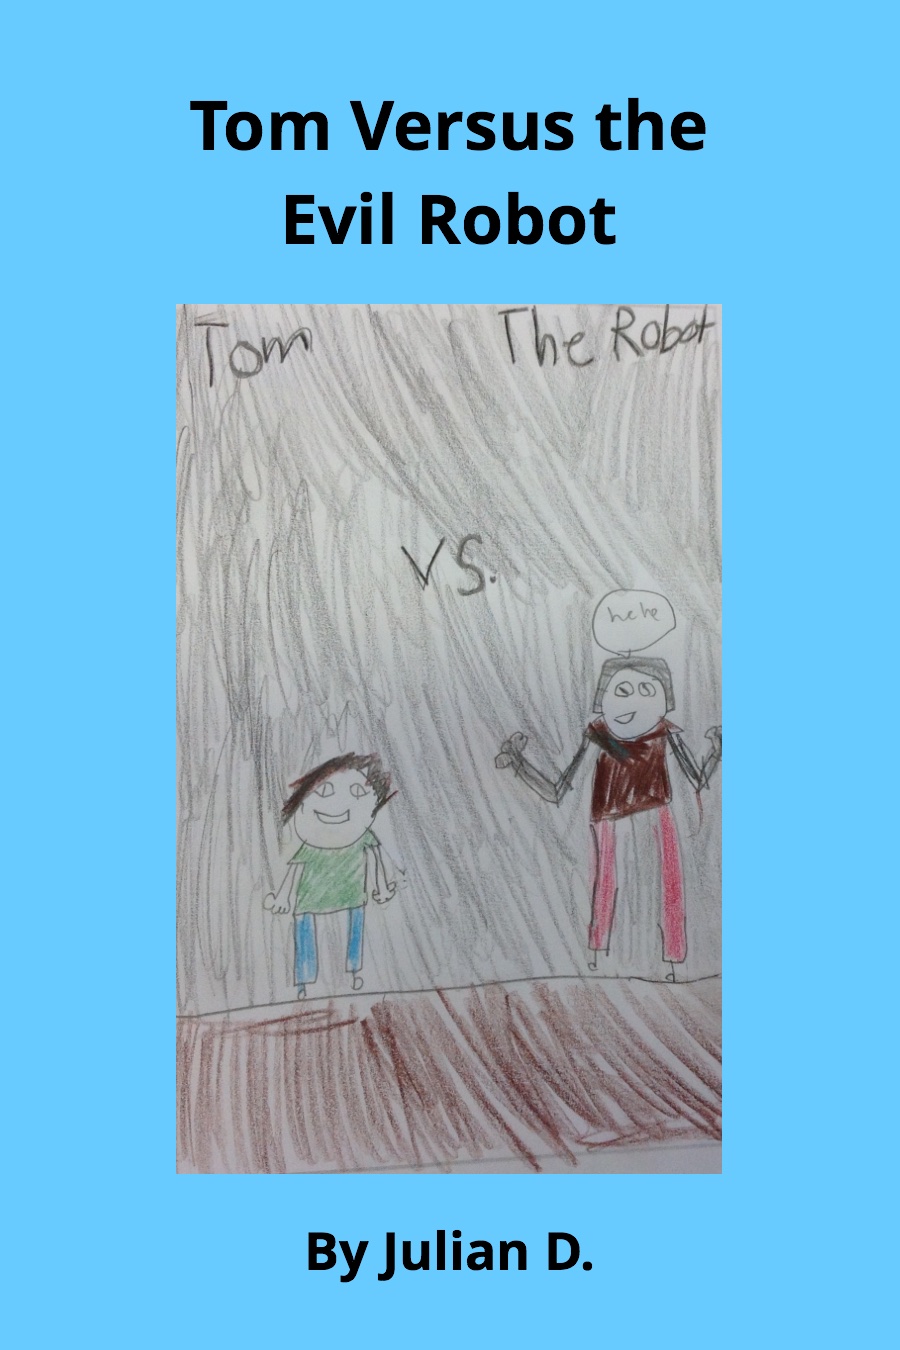 Tom VS the Evil Robot by Julian D